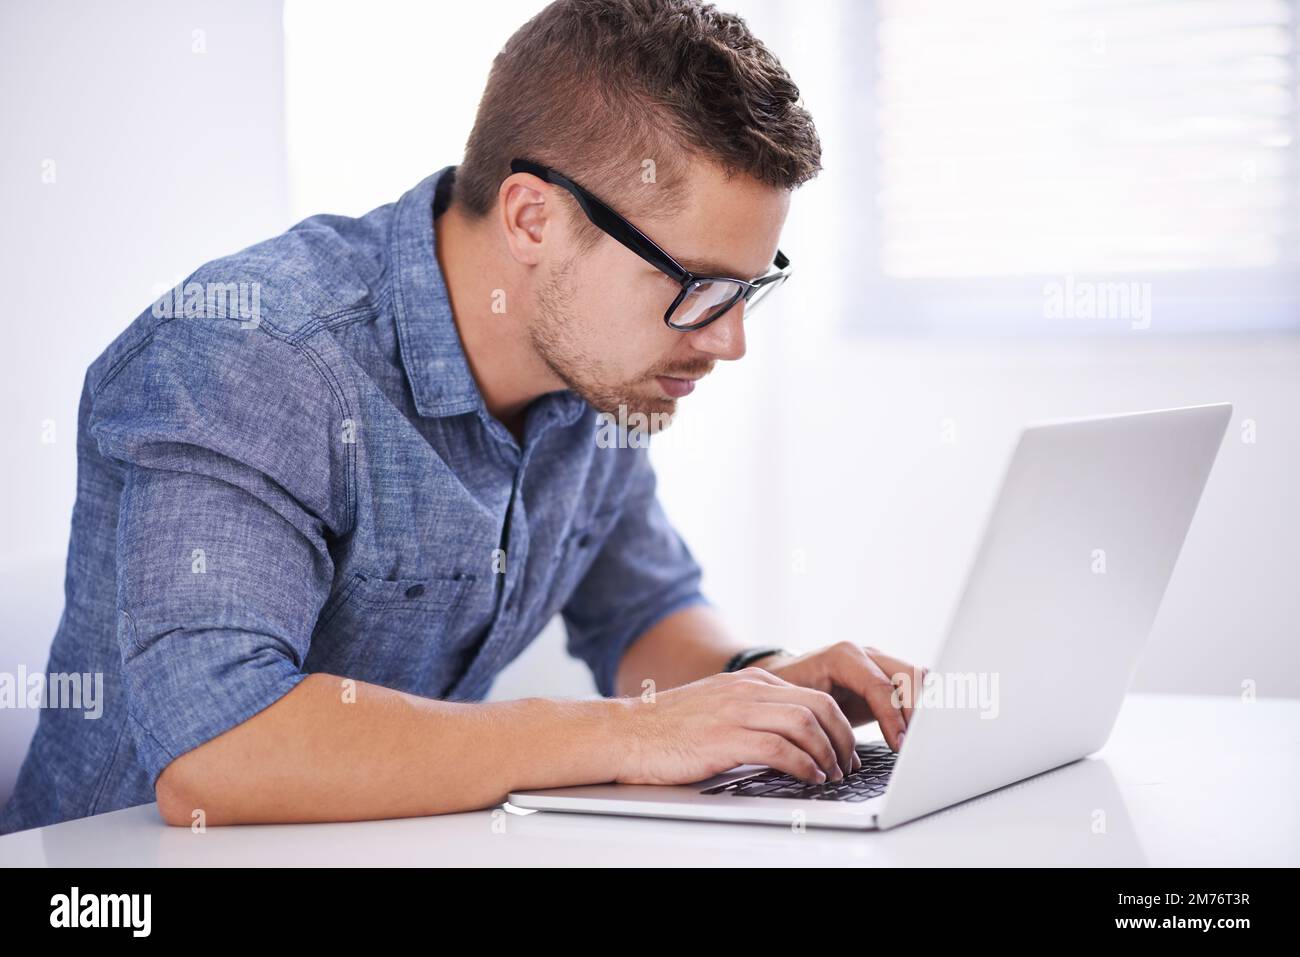 Entreprise moderne rythme rapide, innovant et en ligne. Un jeune homme d'affaires créatif utilisant son ordinateur portable. Banque D'Images